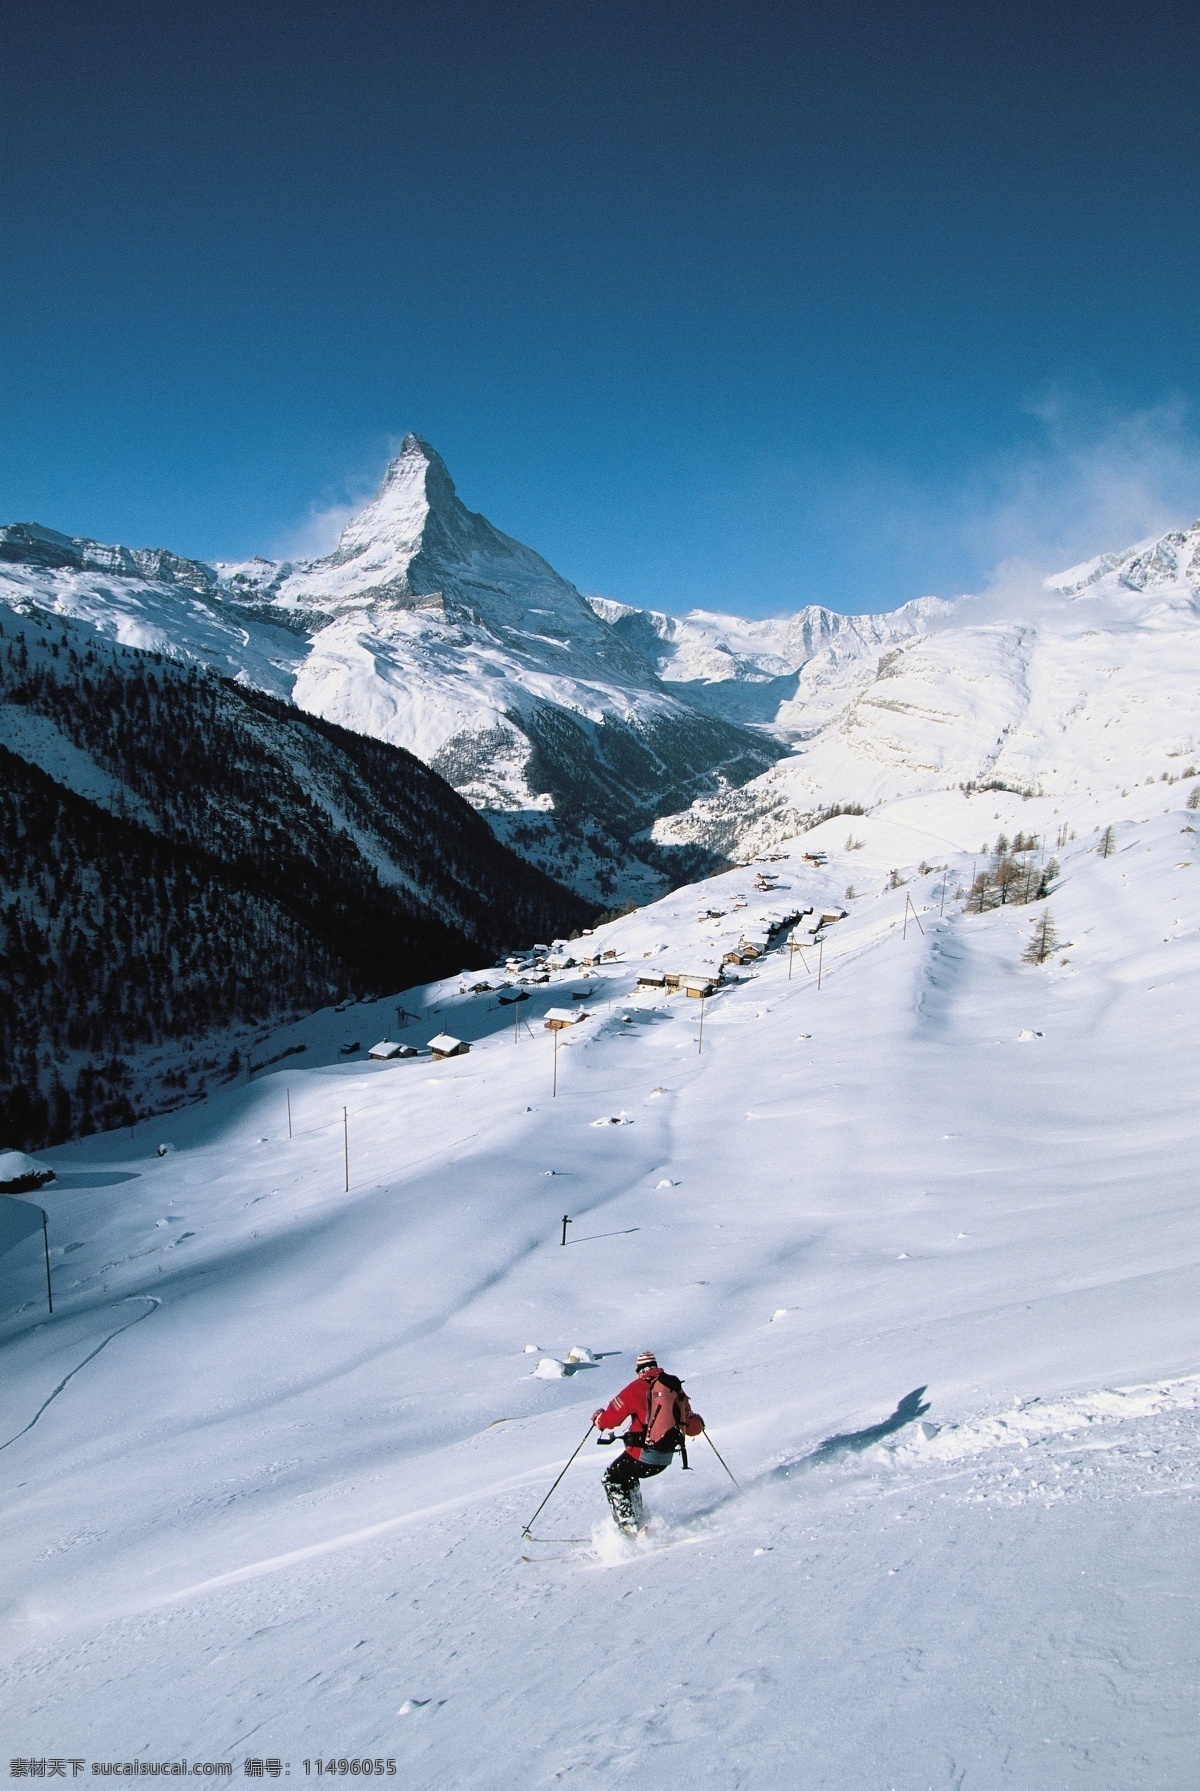 滑雪的人物 美丽 自然 雪地 冬季 运动 人物 滑雪 跳跃 雪山 极限运动 体育运动 斜坡 生活百科 蓝色